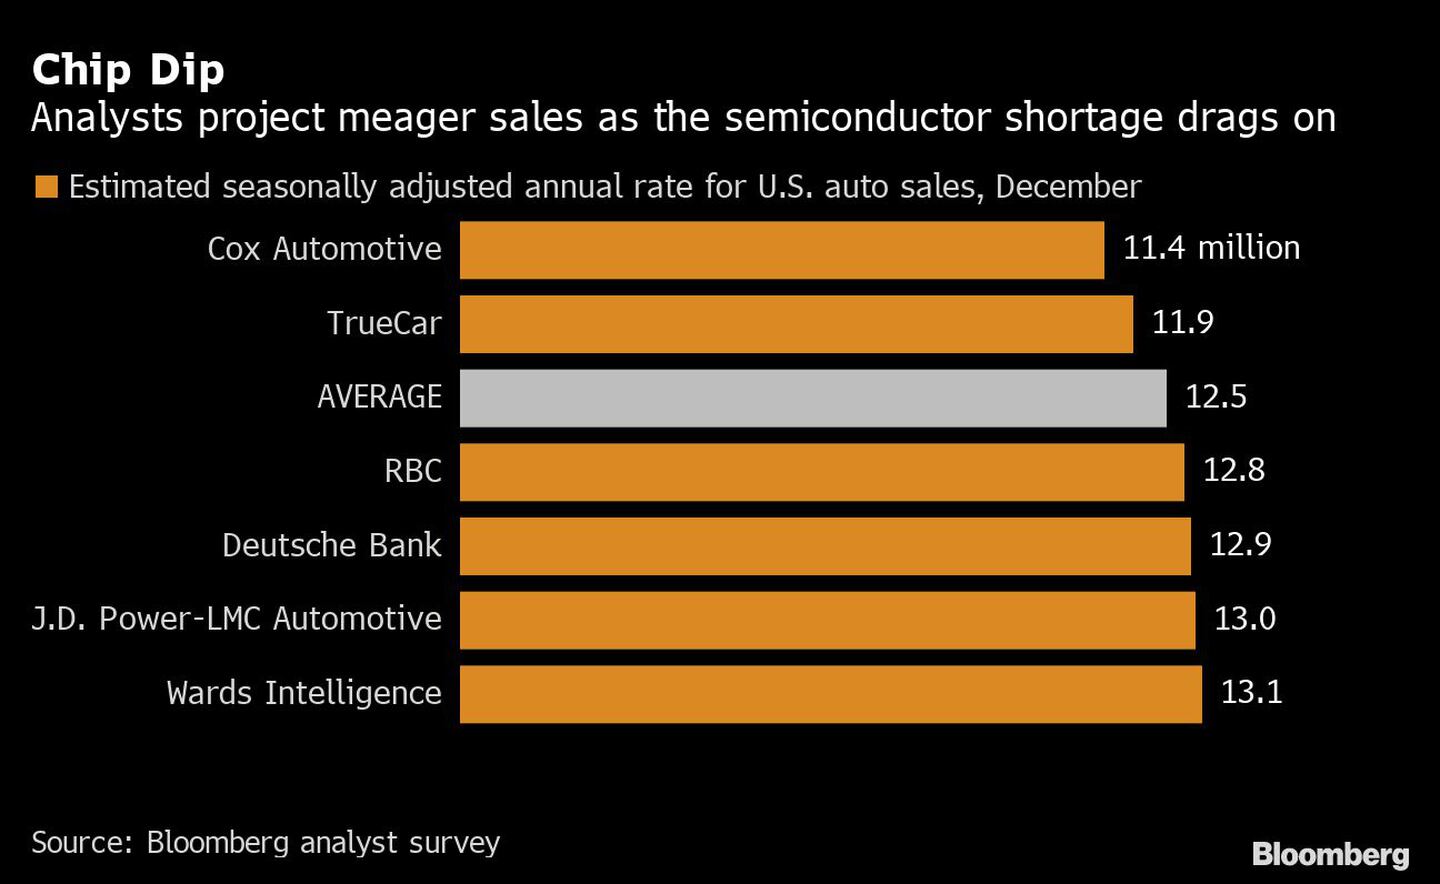 Caída de los chips
Los analistas prevén unas ventas escasas debido a la escasez de semiconductores
Naranja: tasa anual estimada desestacionalizada de las ventas de automóviles en Estados Unidos, diciembredfd